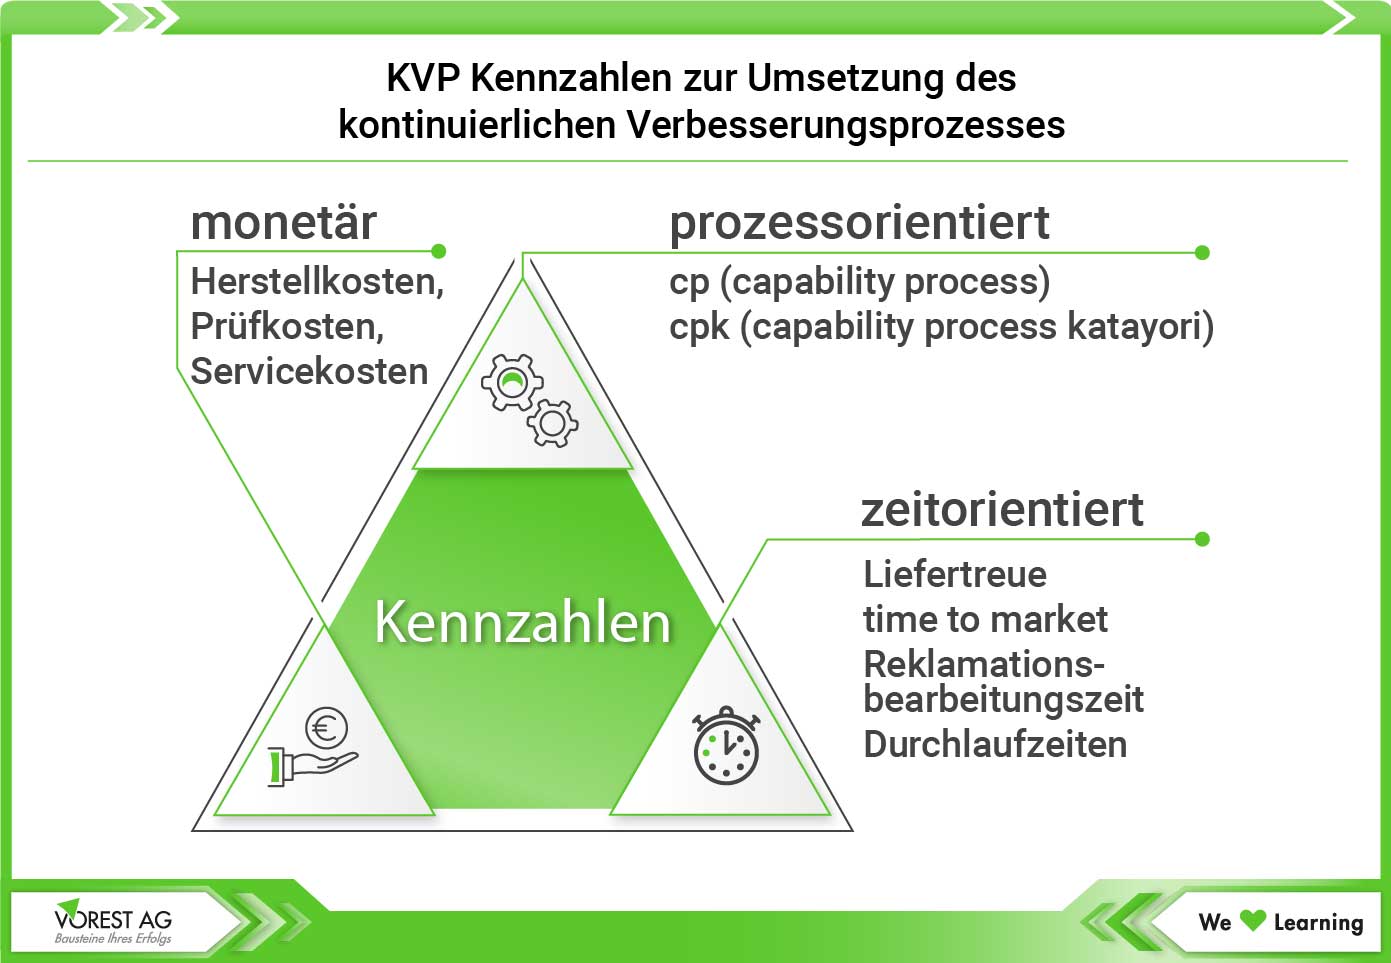 KVP Kennzahlen im Unternehmen - Kennzahlendreieck